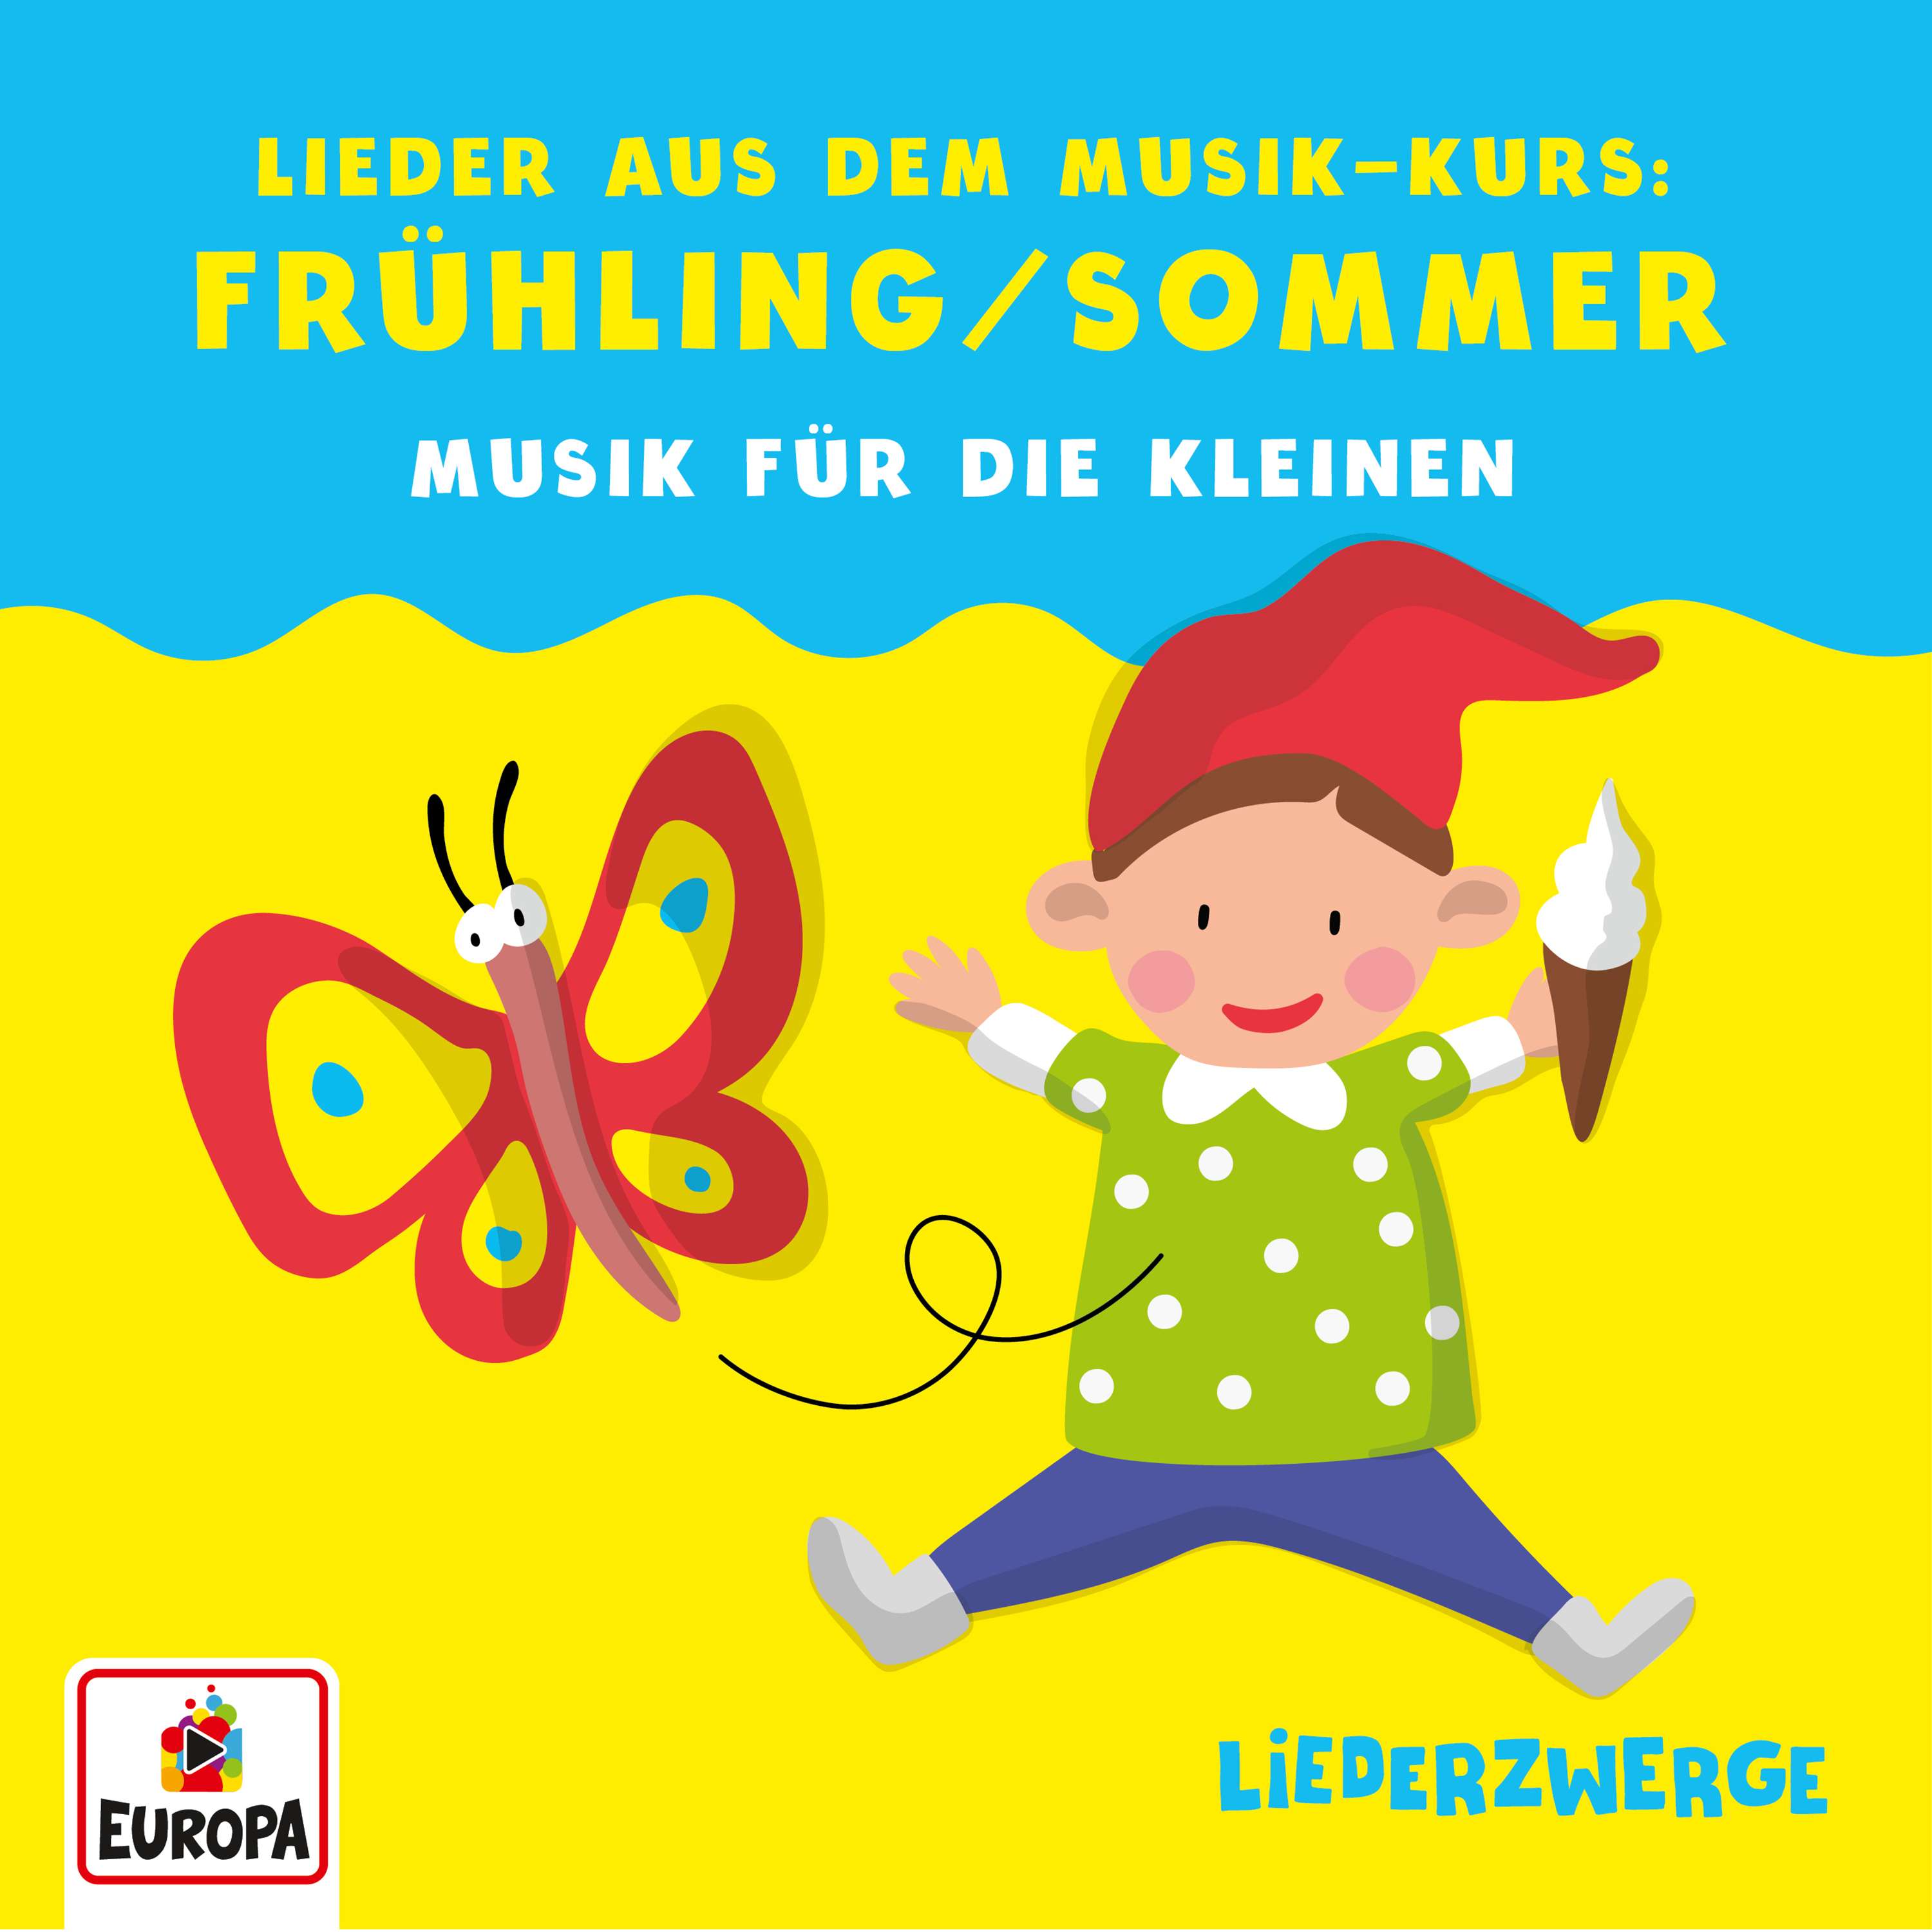 Lena, Felix & die Kita-Kids: Liederzwerge - Lieder aus dem Musik-Kurs, Vol. 2: Frühling/Sommer